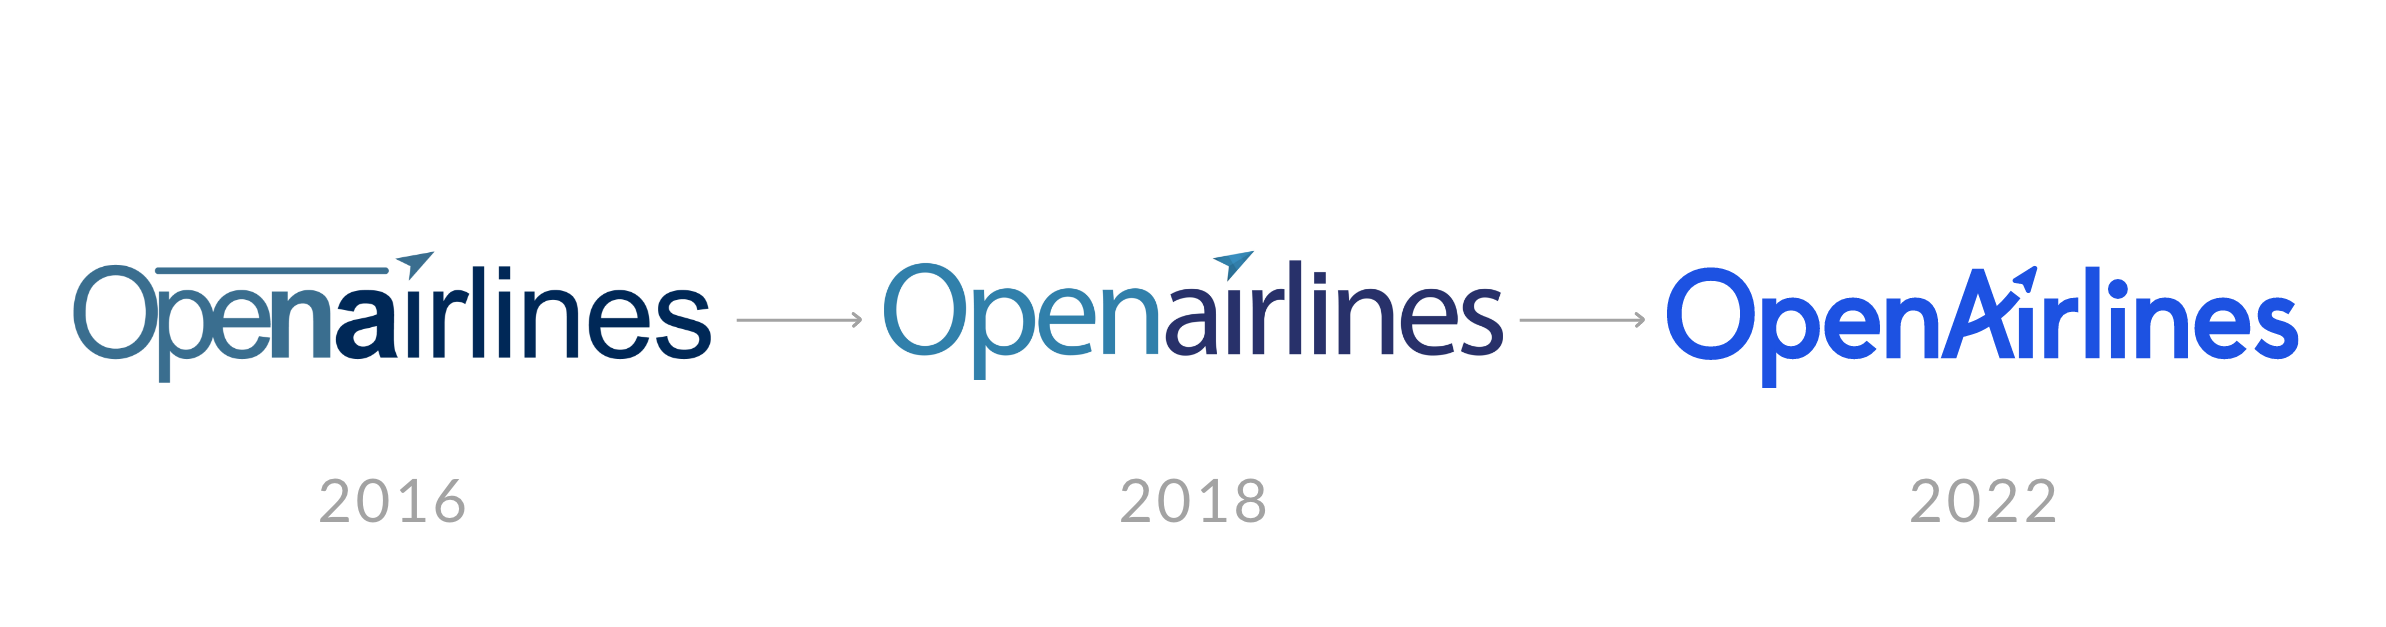 OpenAirlines logo evolution